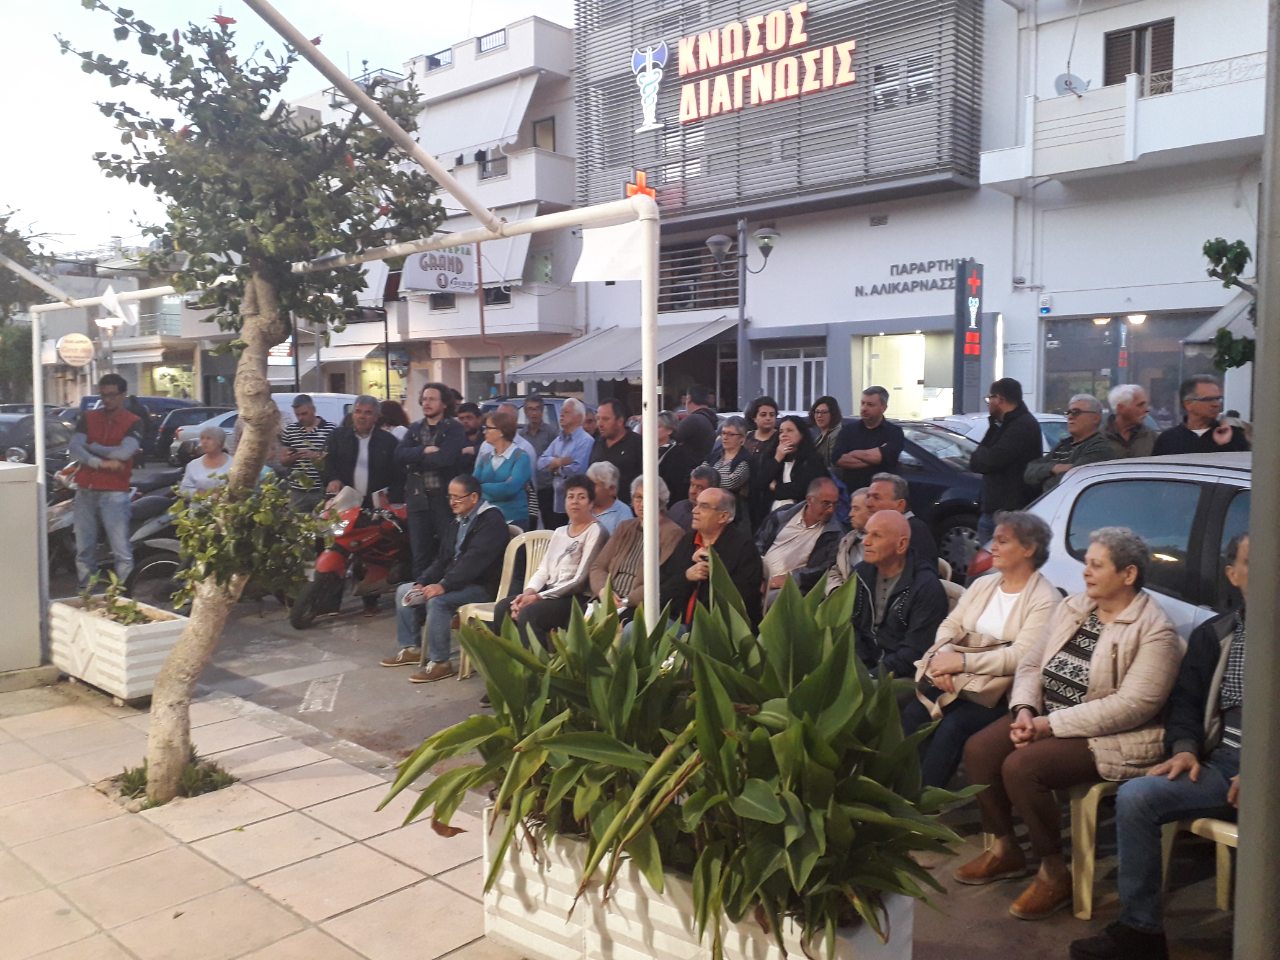 Η πολιτική συγκέντρωση του ΚΚΕ στην Αλικαρνασσό στο Ηράκλειο (φωτο)